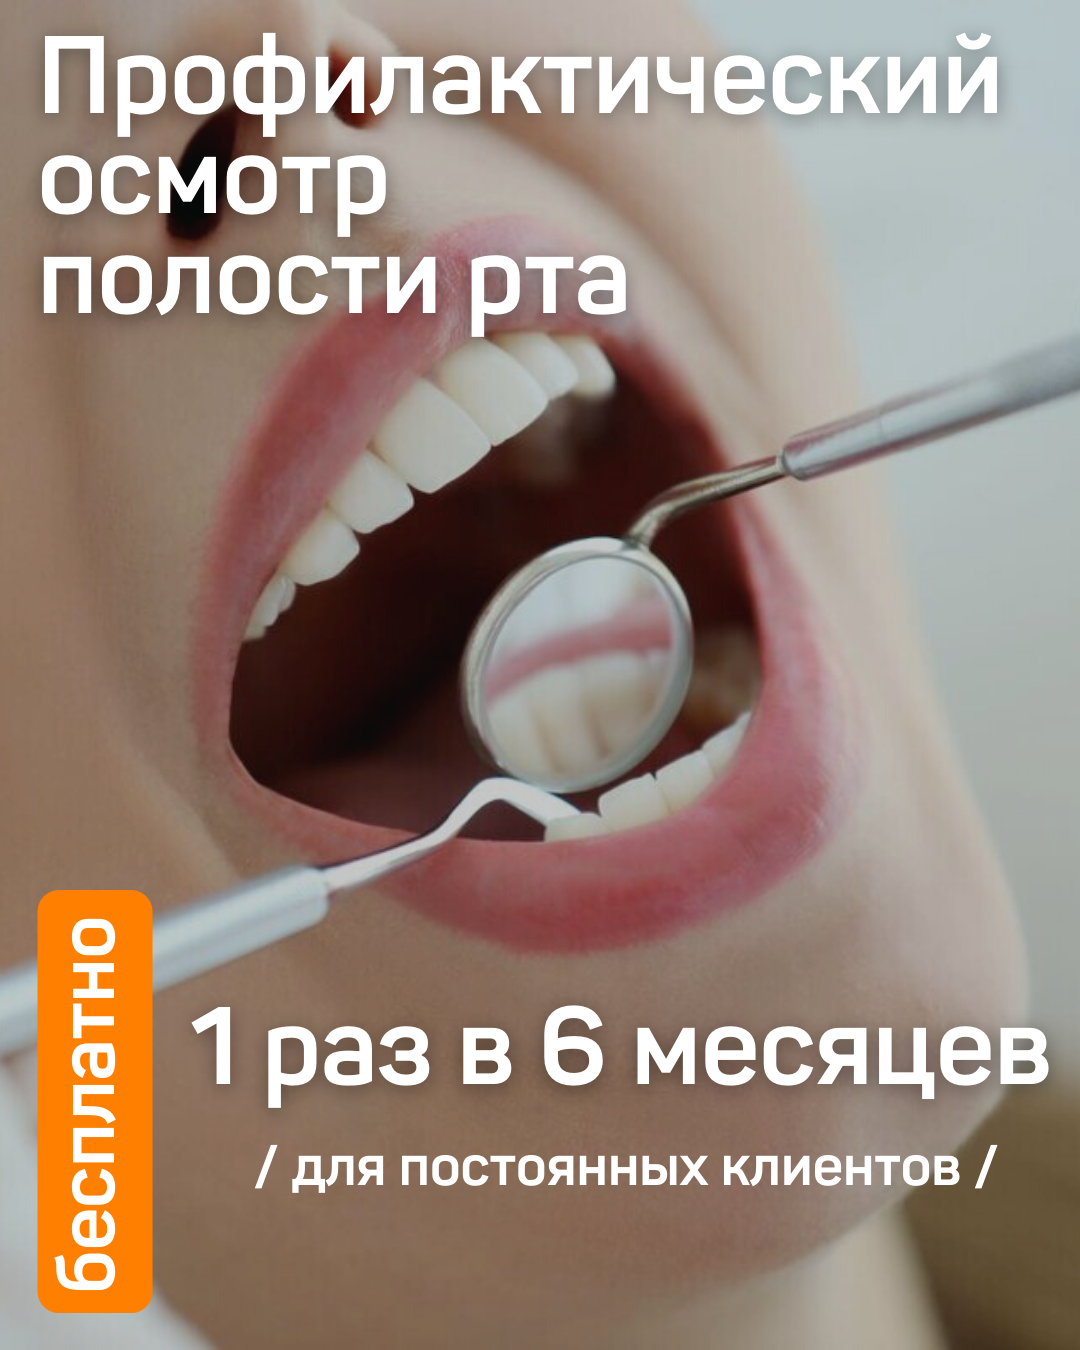 Чистка зубов казань акции. Профессиональная гигиена полости рта. Осмотр стоматолога. Профессиональная чистка зубов. Профилактический осмотр стоматолога.